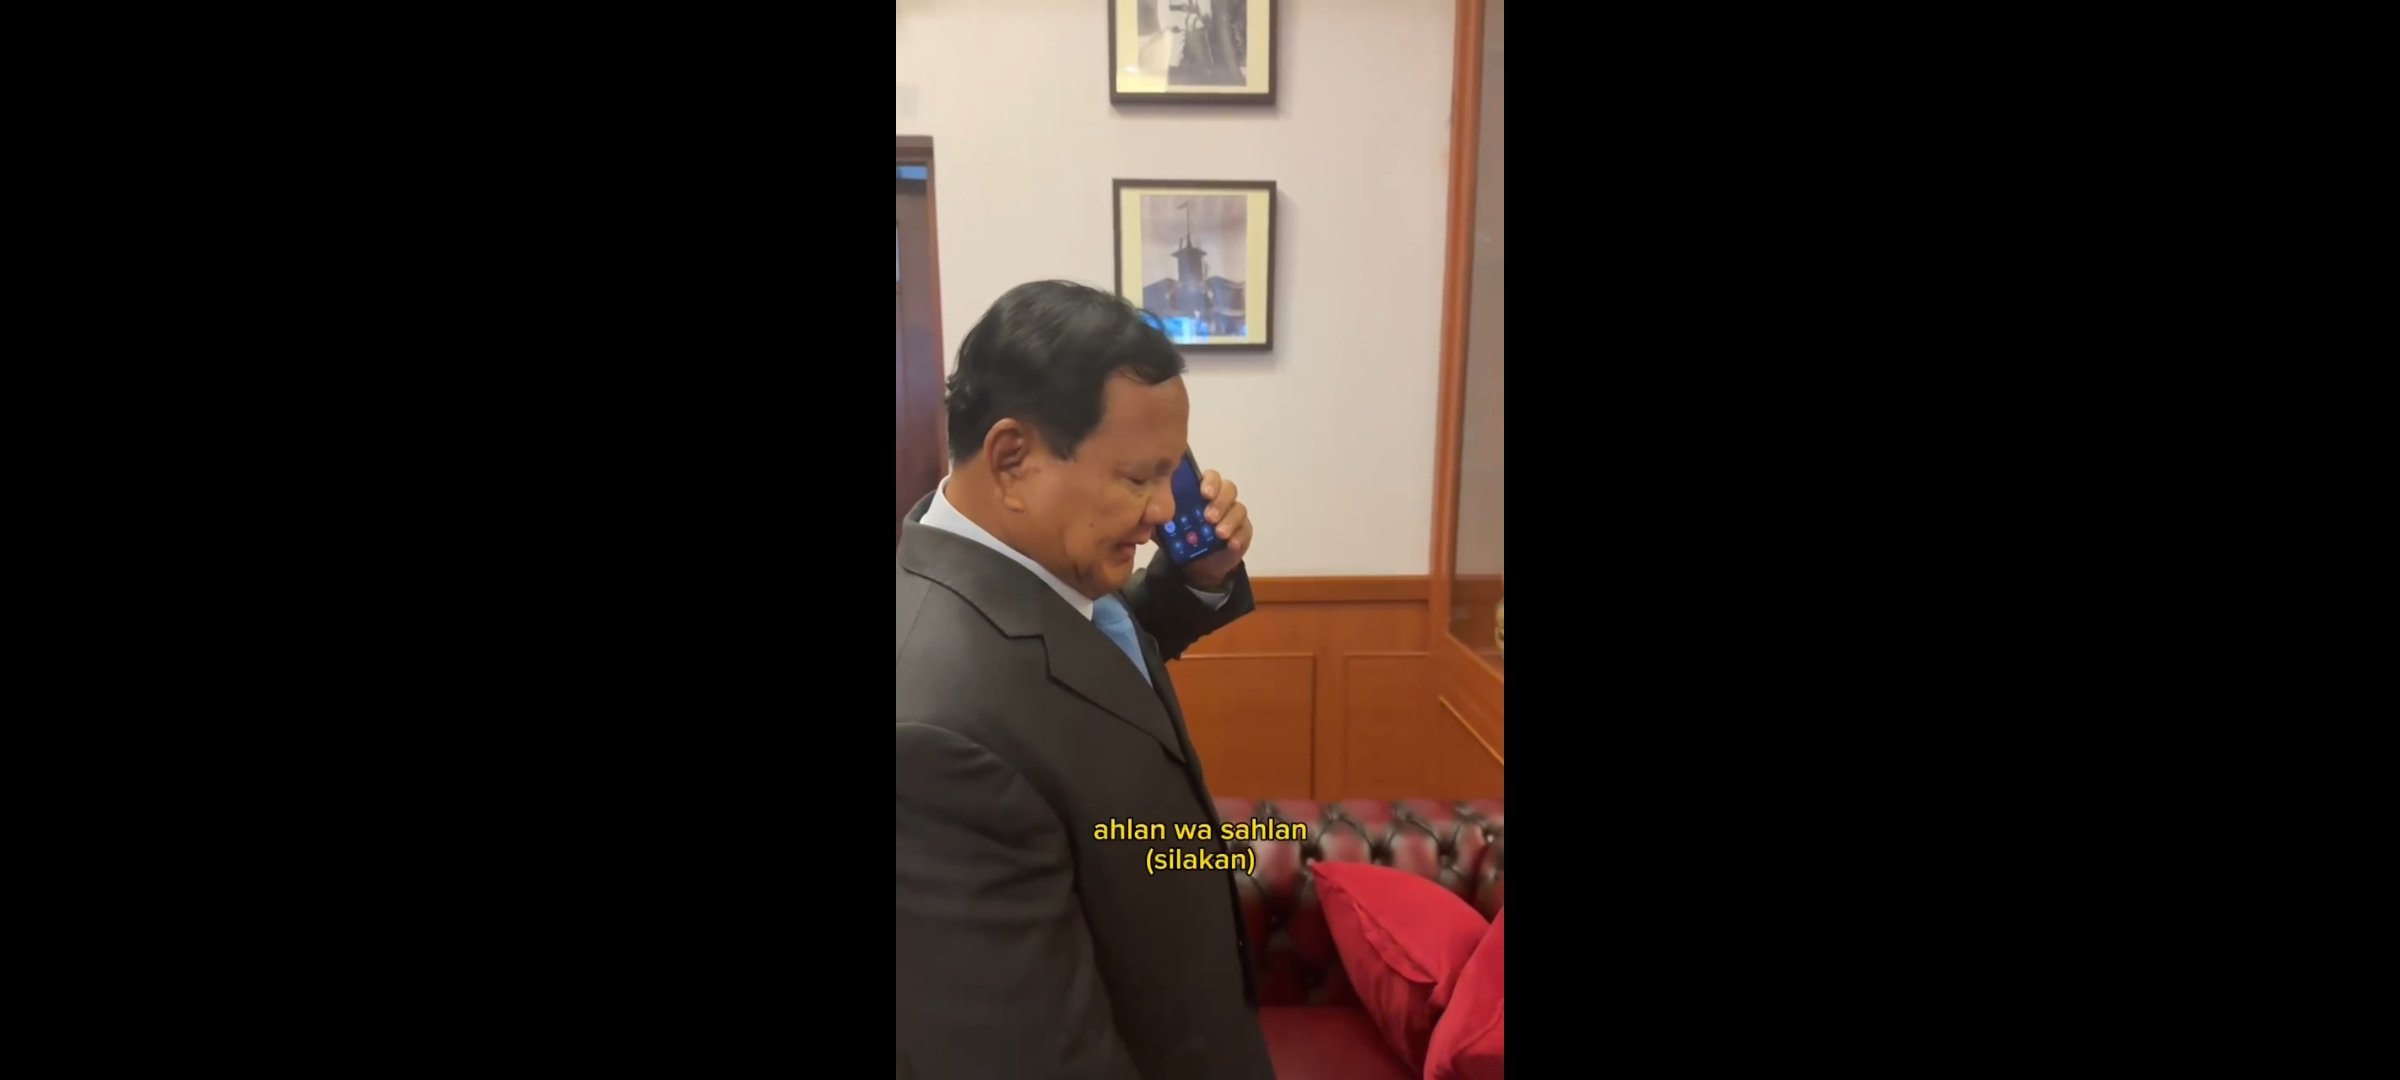 Prabowo menerima ucapan selamat dari Raja Yordania lewat sambungan telepon (Sinpo.id/Tim Media)